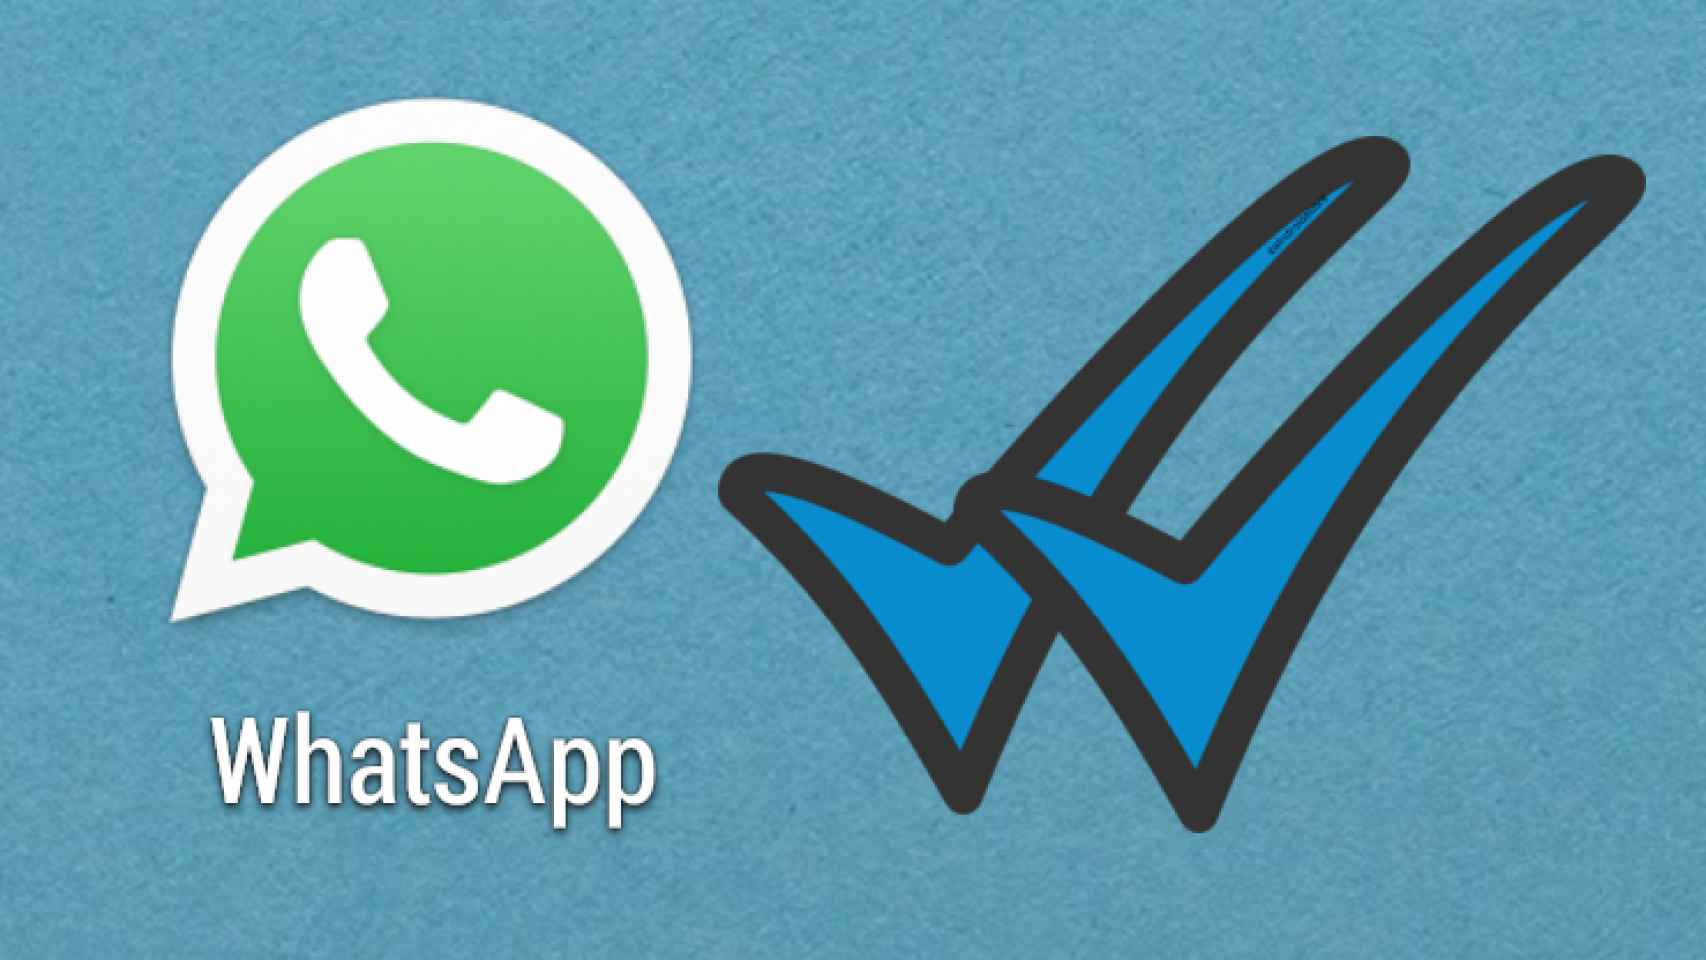 WhatsApp por fin informa cuando un mensaje ha sido leído